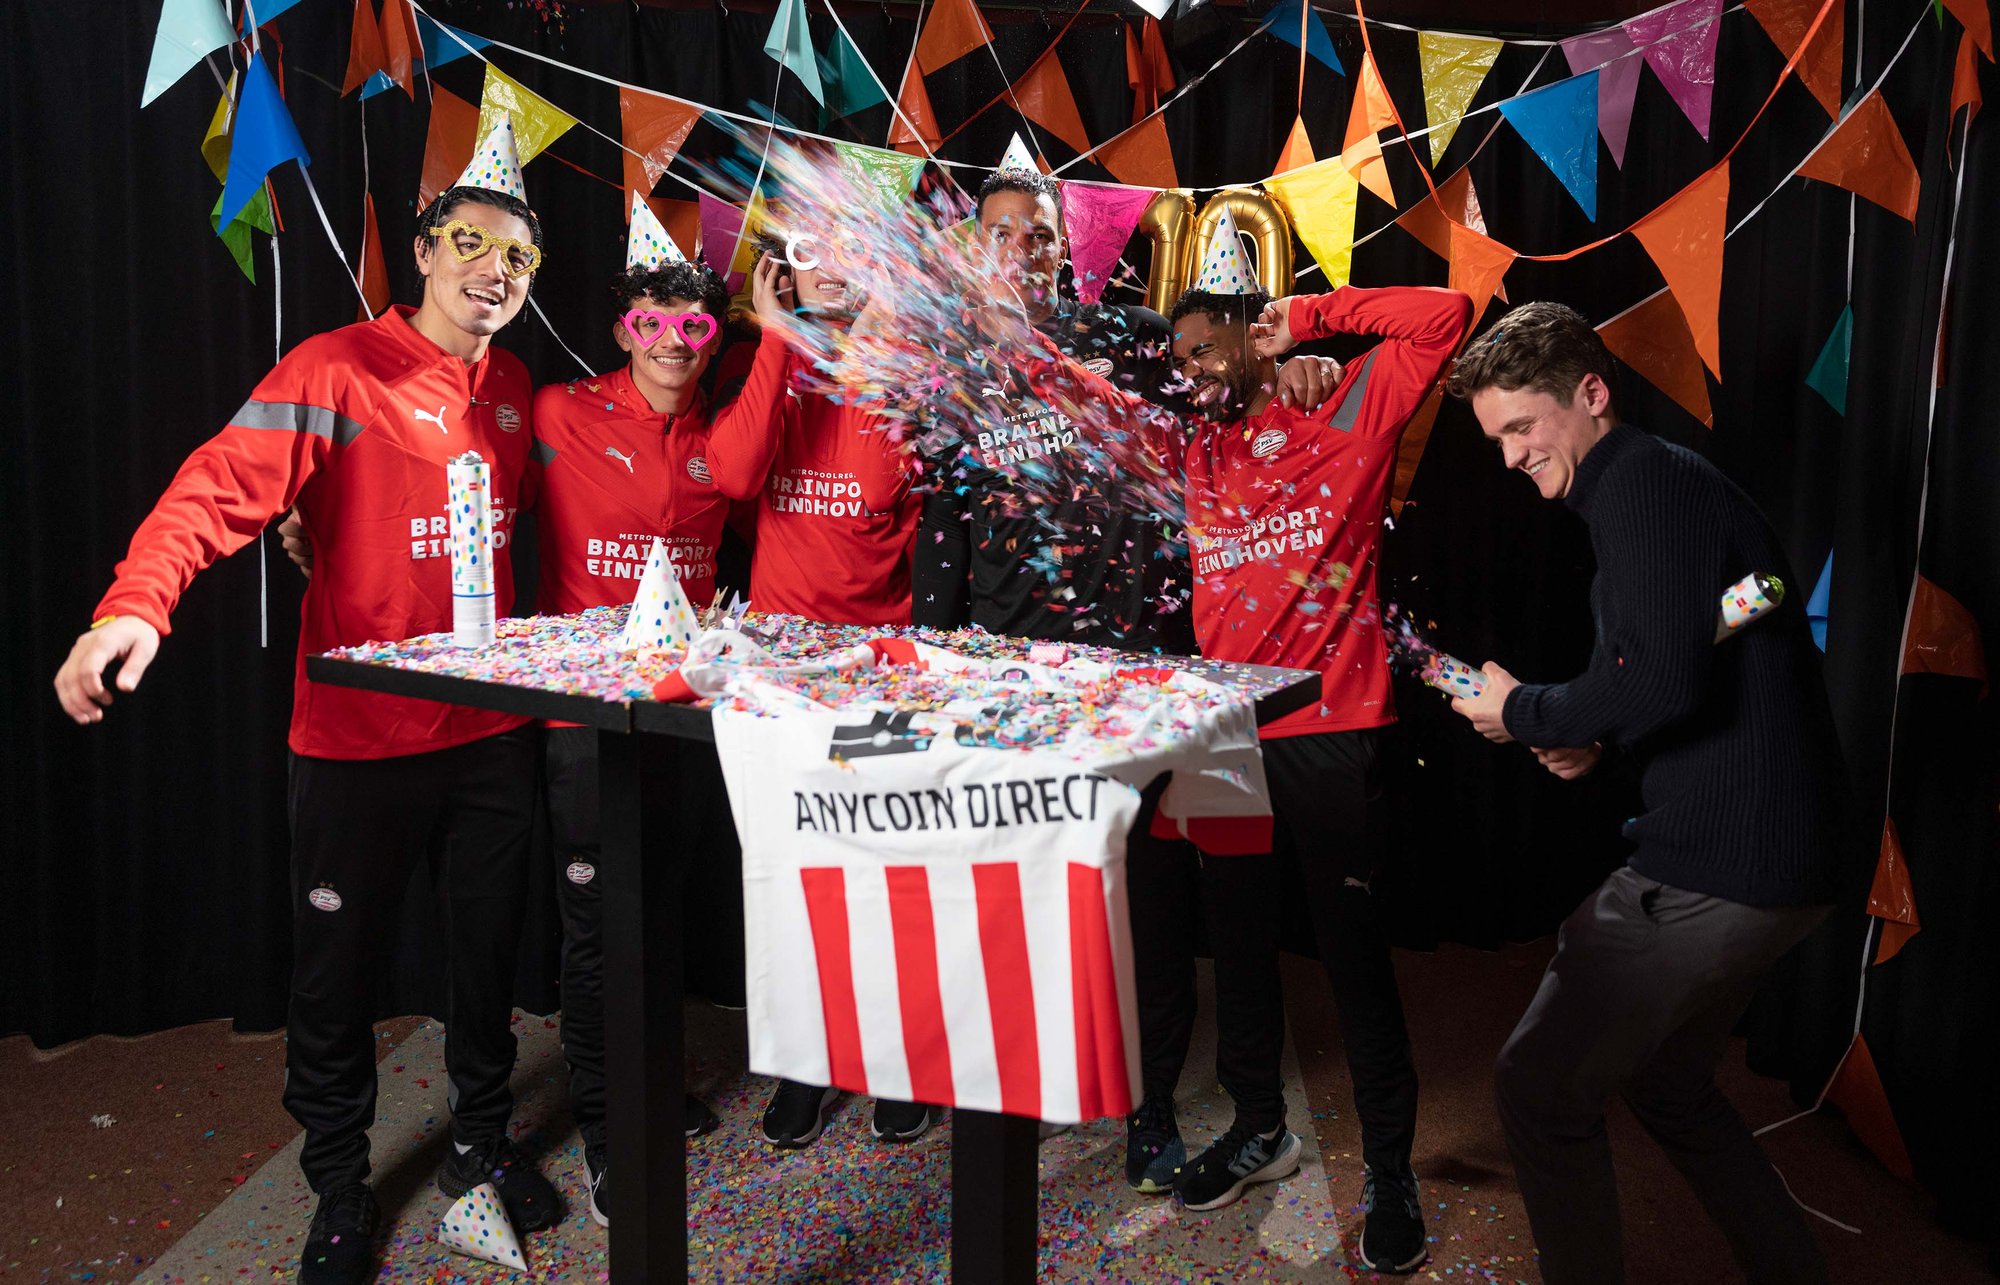 Spelers PSV vieren 10-jarig jubileum Anycoin Direct bij videoshoot